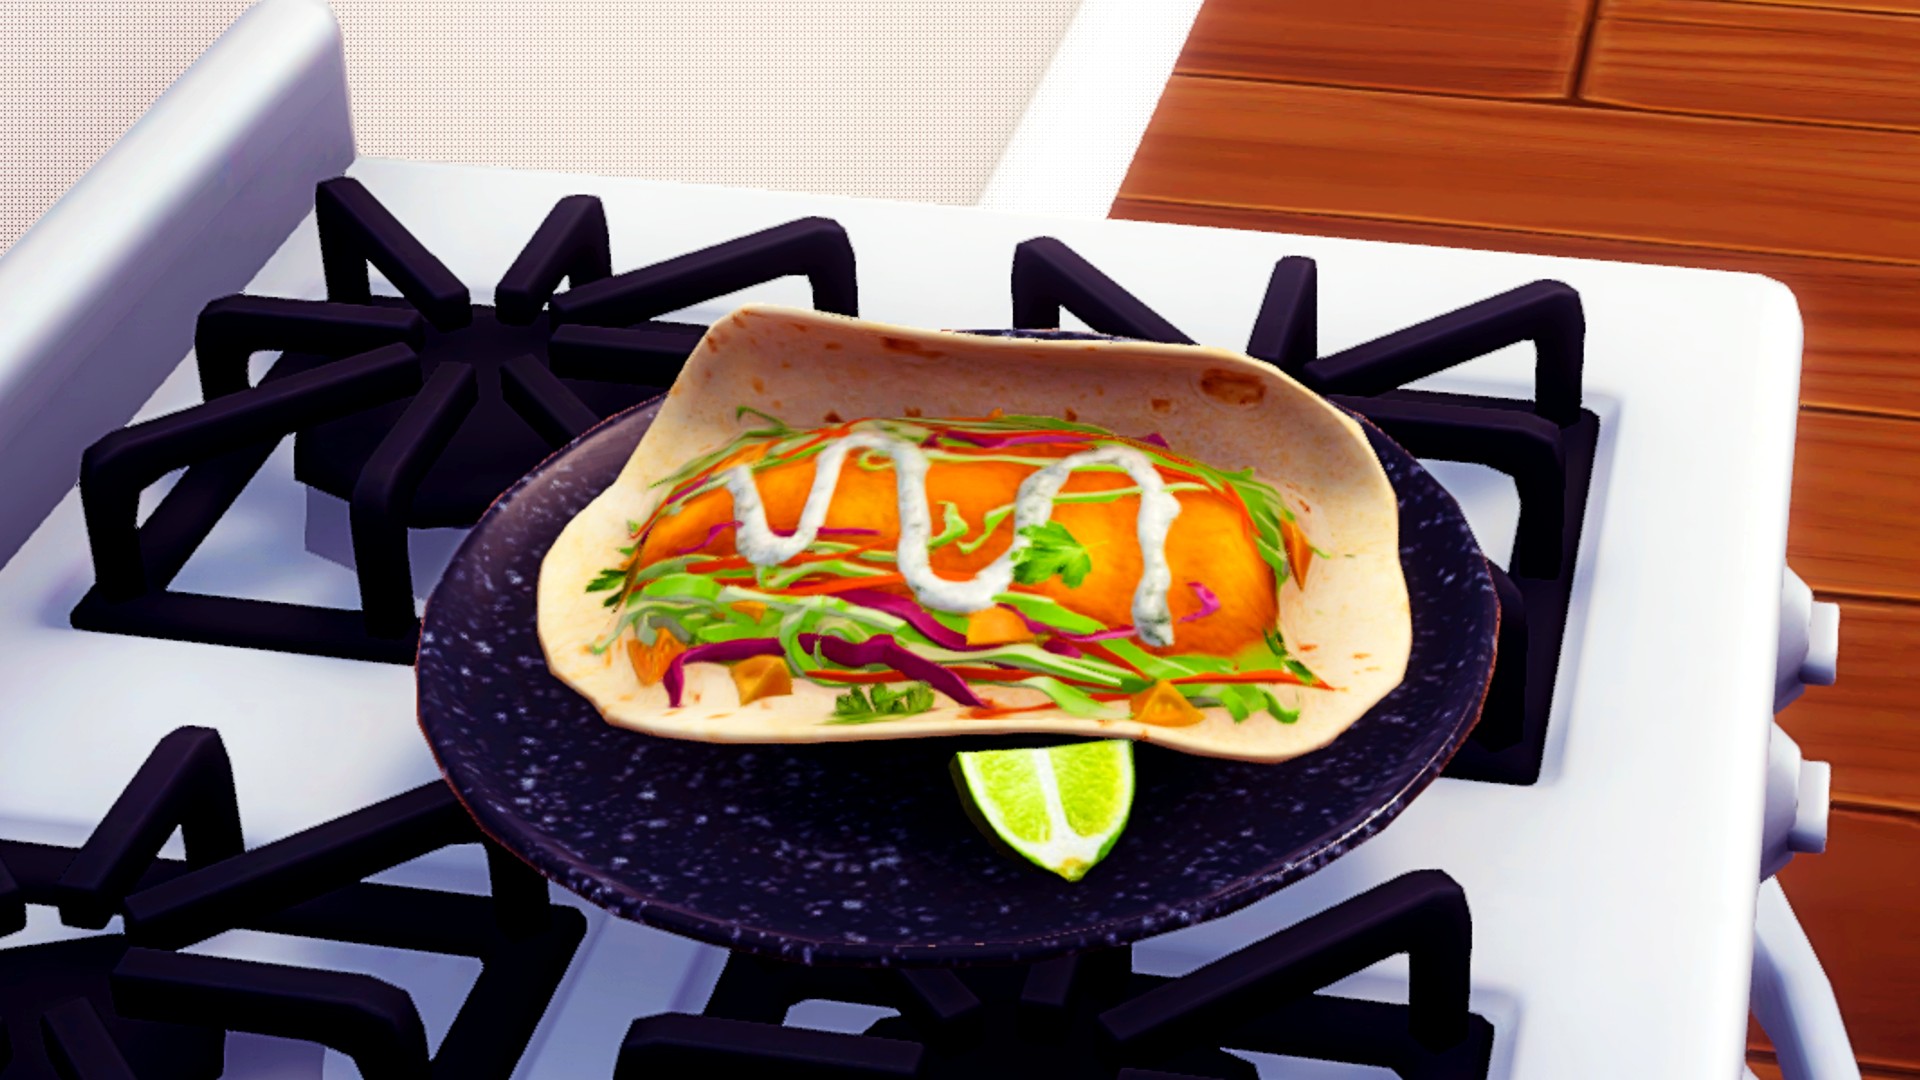 Disney Dreamlight Valley Lima Bintang Resep: Resep Tacos Ikan ditampilkan sebagai taco tunggal, terbuka, dan lembut yang diisi dengan ikan goreng, salad, dan saus, disertai dengan irisan jeruk nipis